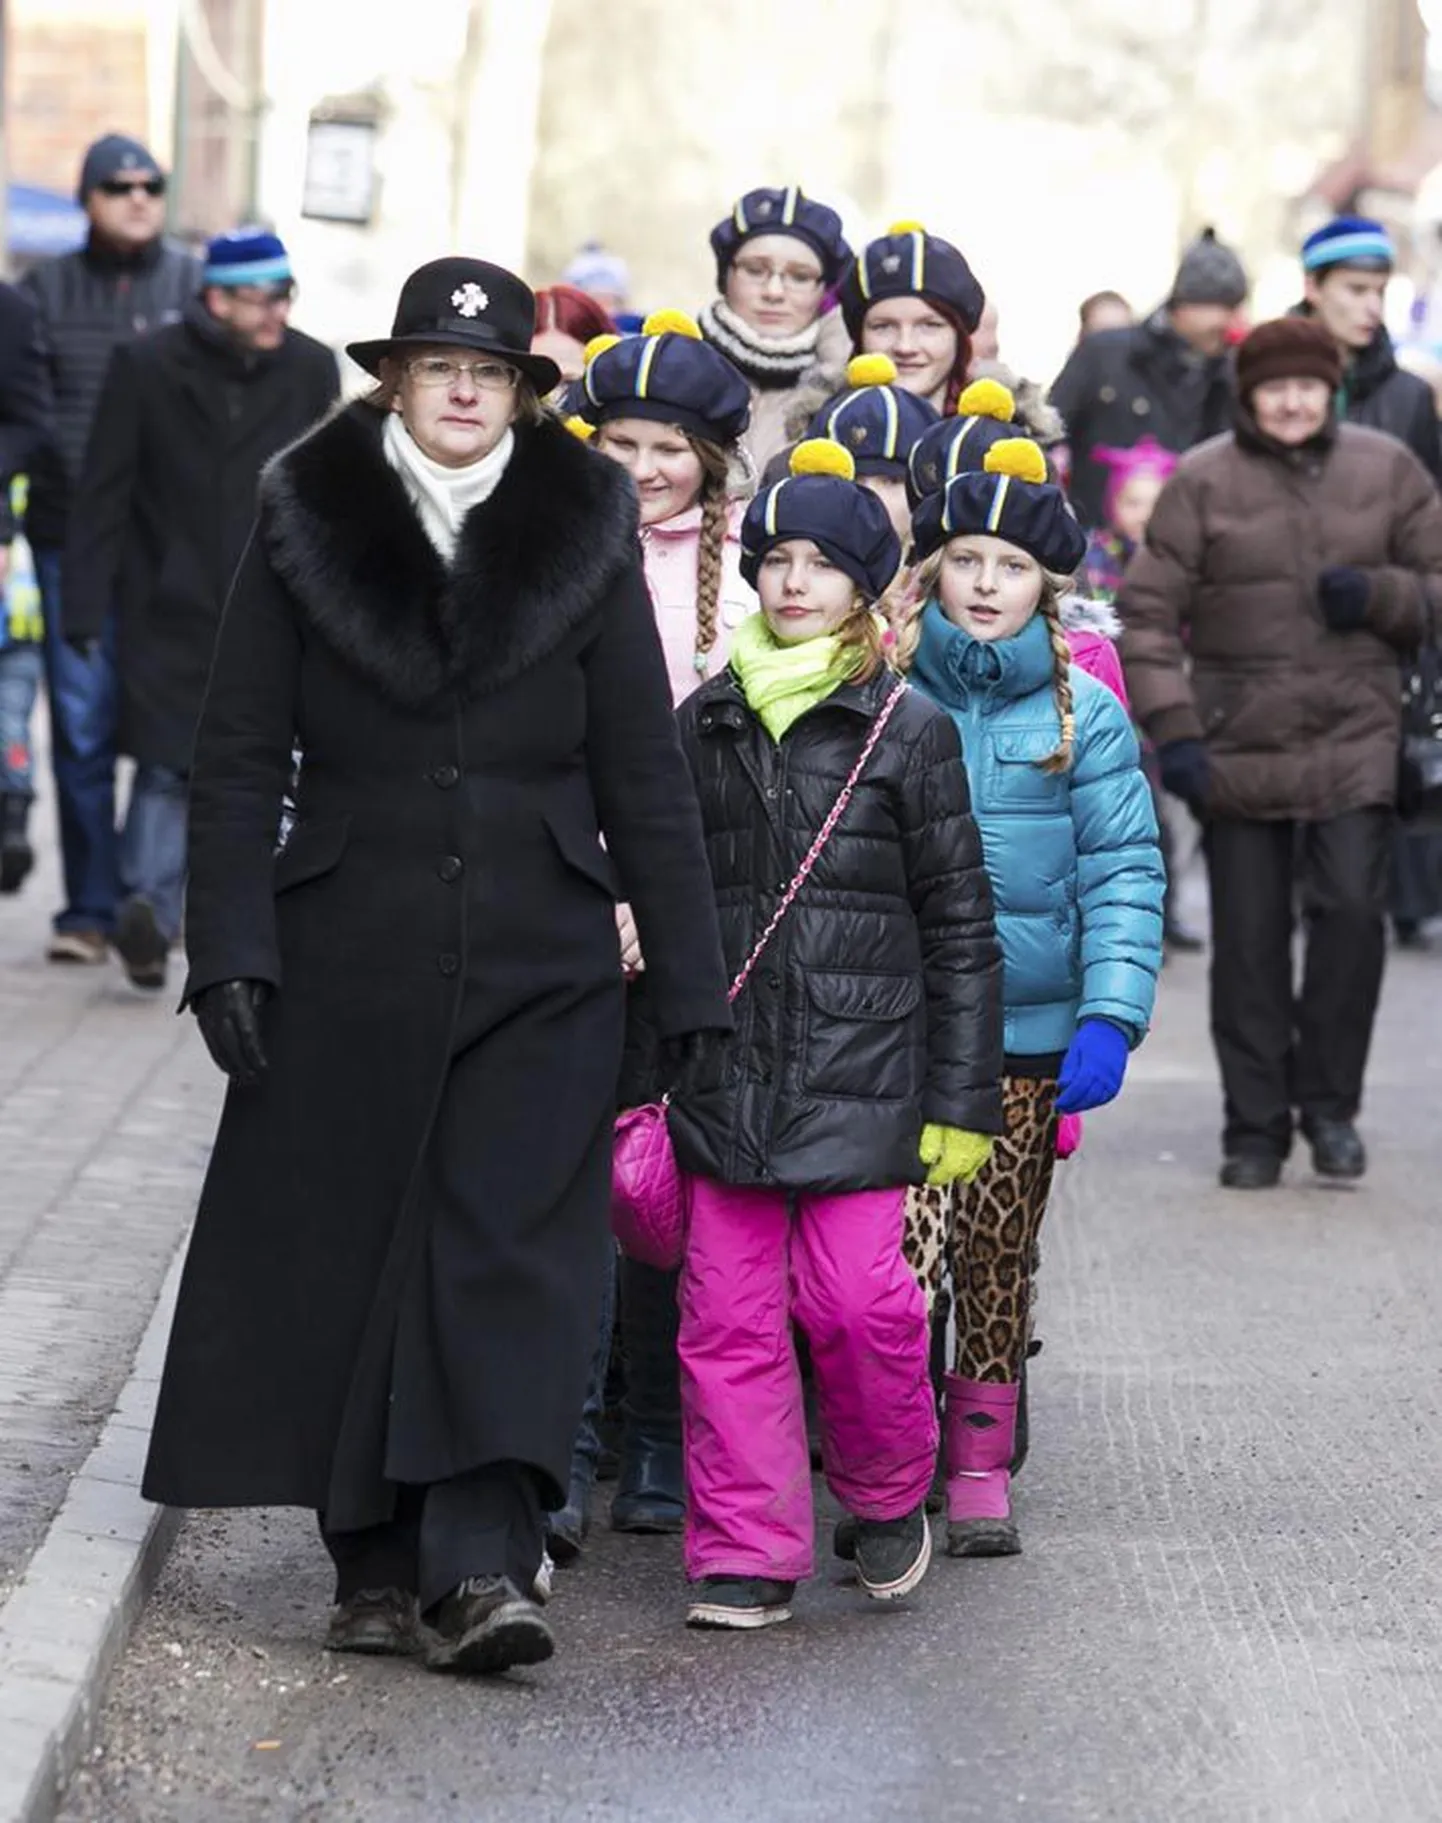 Varem on piduliku jalutuskäigu eesotsas kõndinud kaitseliitlased, naiskodukaitsjad ning kooliõpilased. Tänavu jalutasid inimesed niisama läbi Viljandi vanalinna.